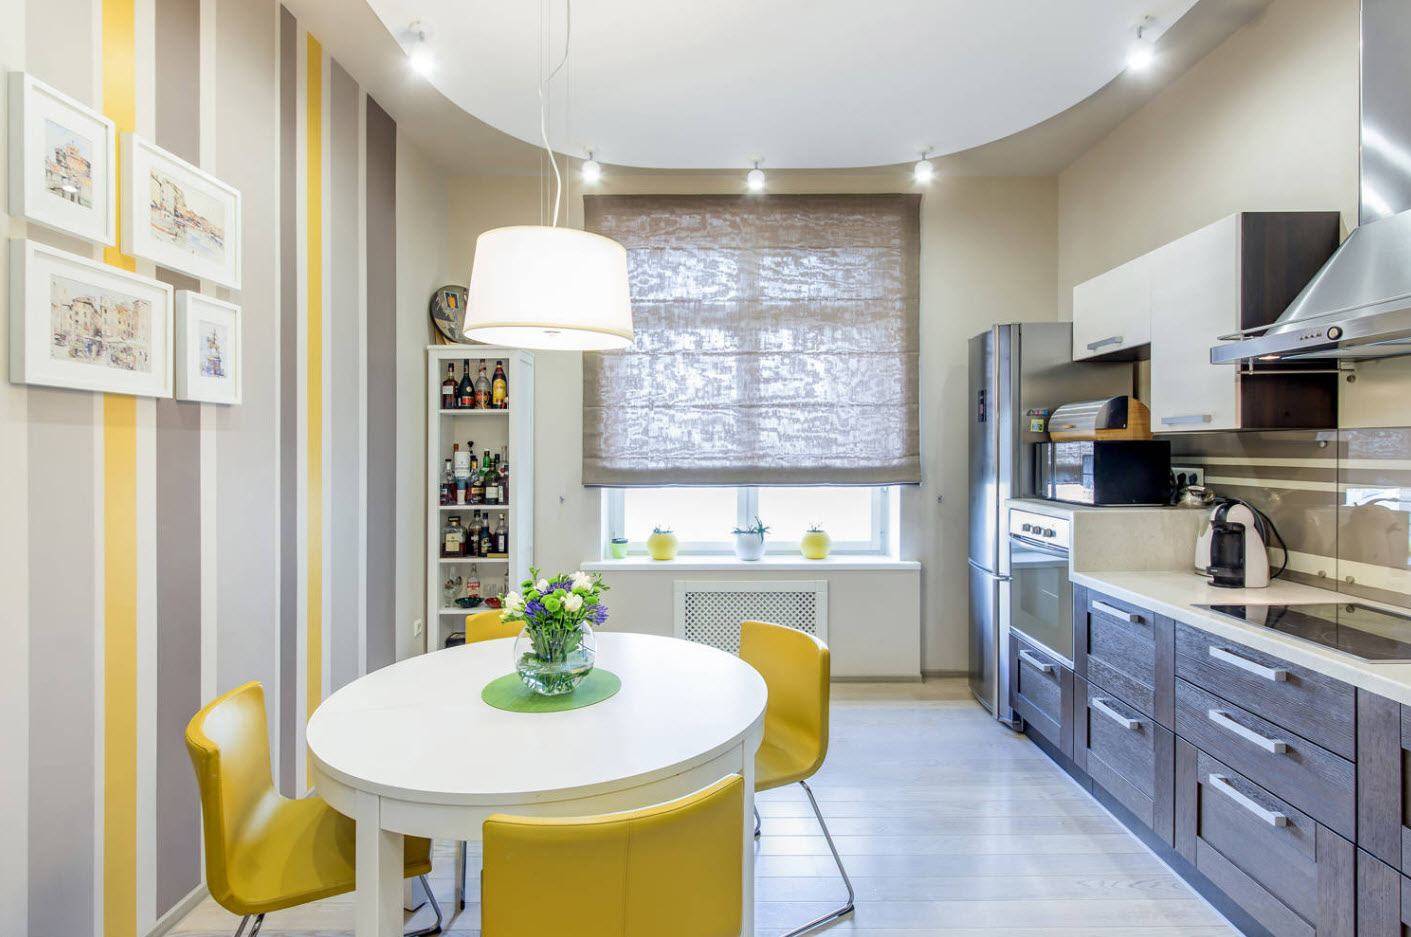 Кухня-гостиная 18 кв. м: дизайн, фото с зонированием, совмещение, прямоугольная и квадратная форма, с диваном, в скандинавском стиле, интерьер